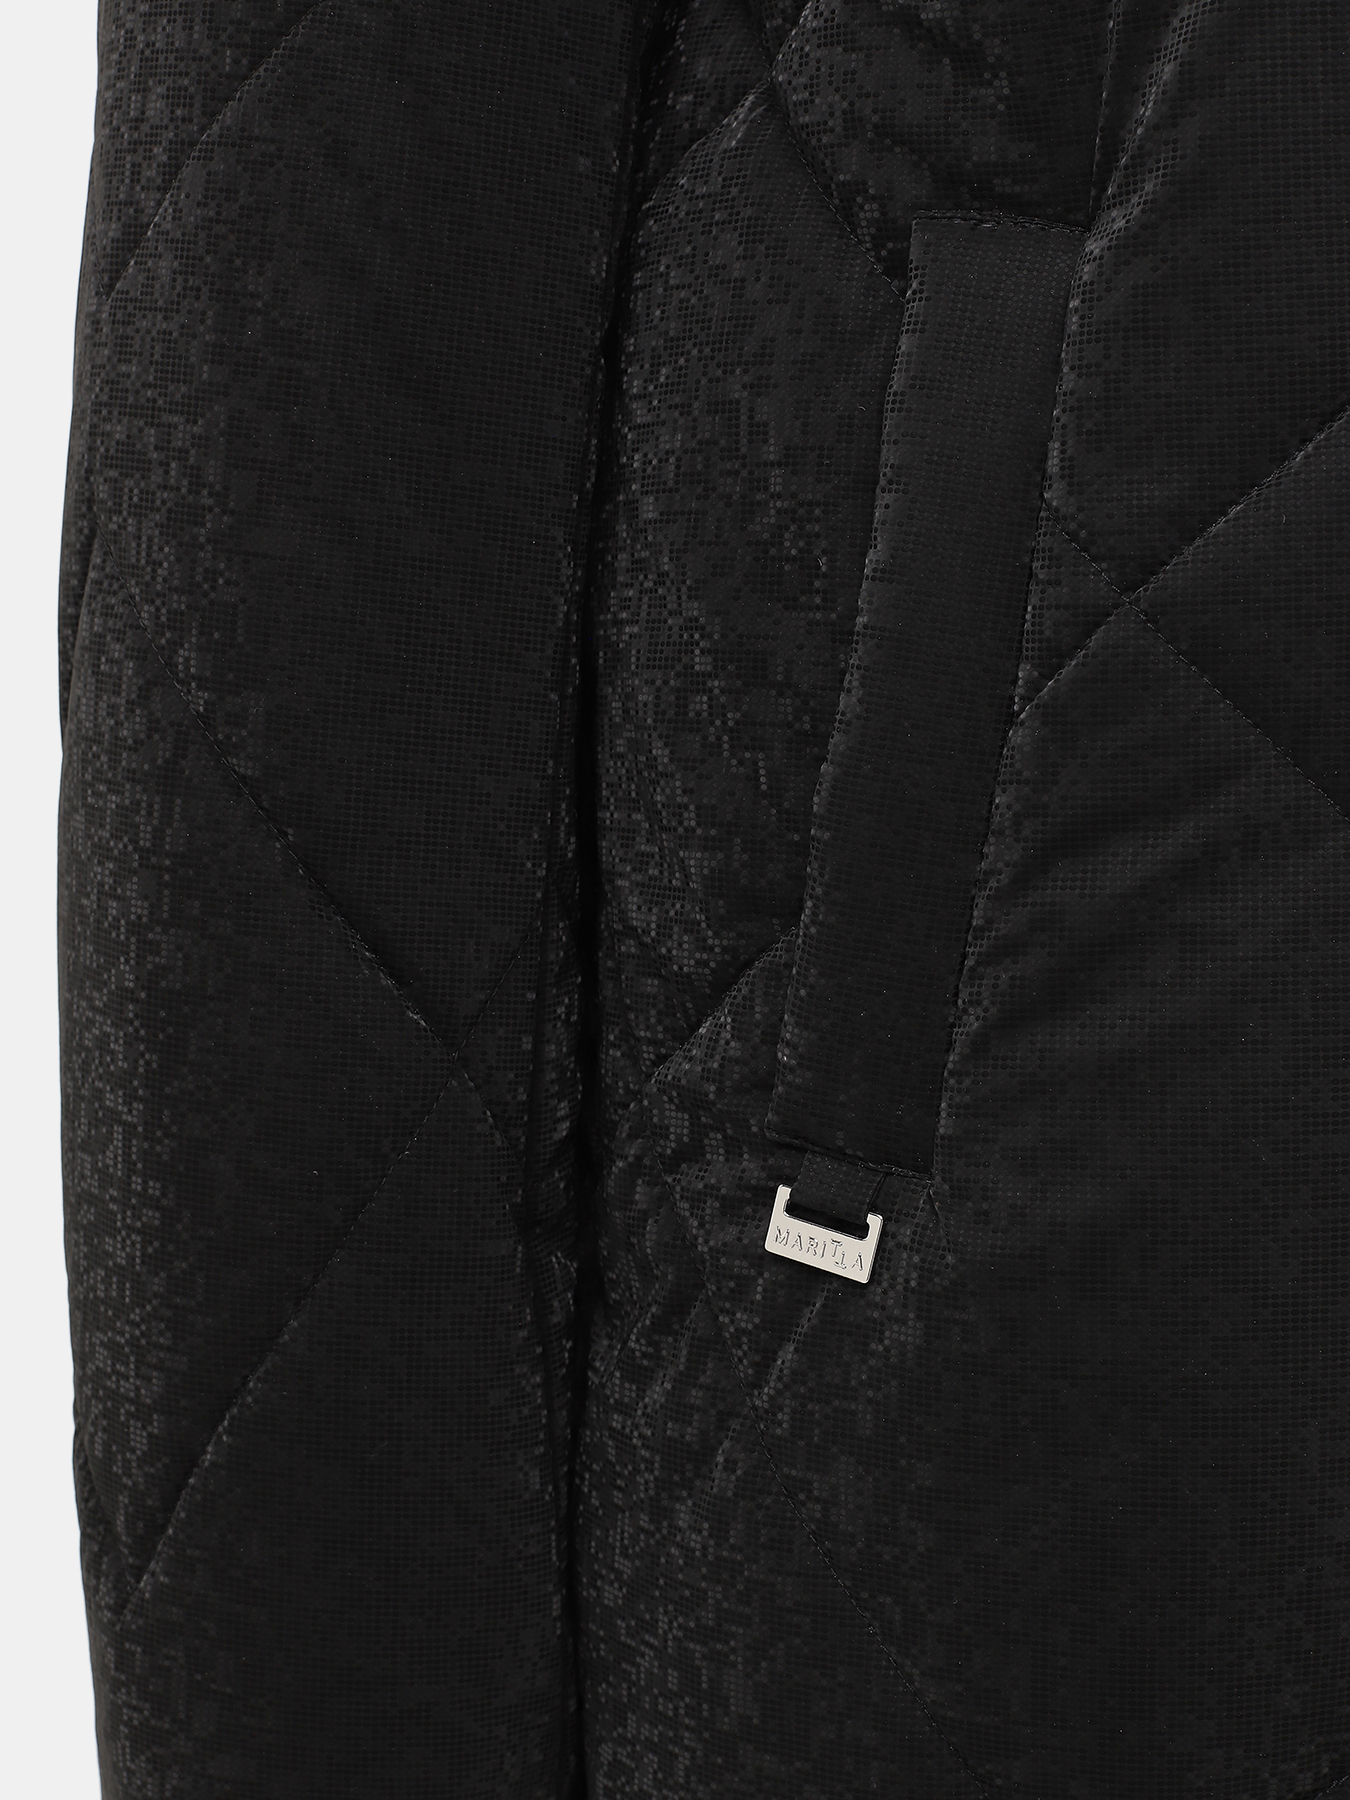 Пальто зимнее Maritta 433524-022, цвет черный, размер 48 - фото 5